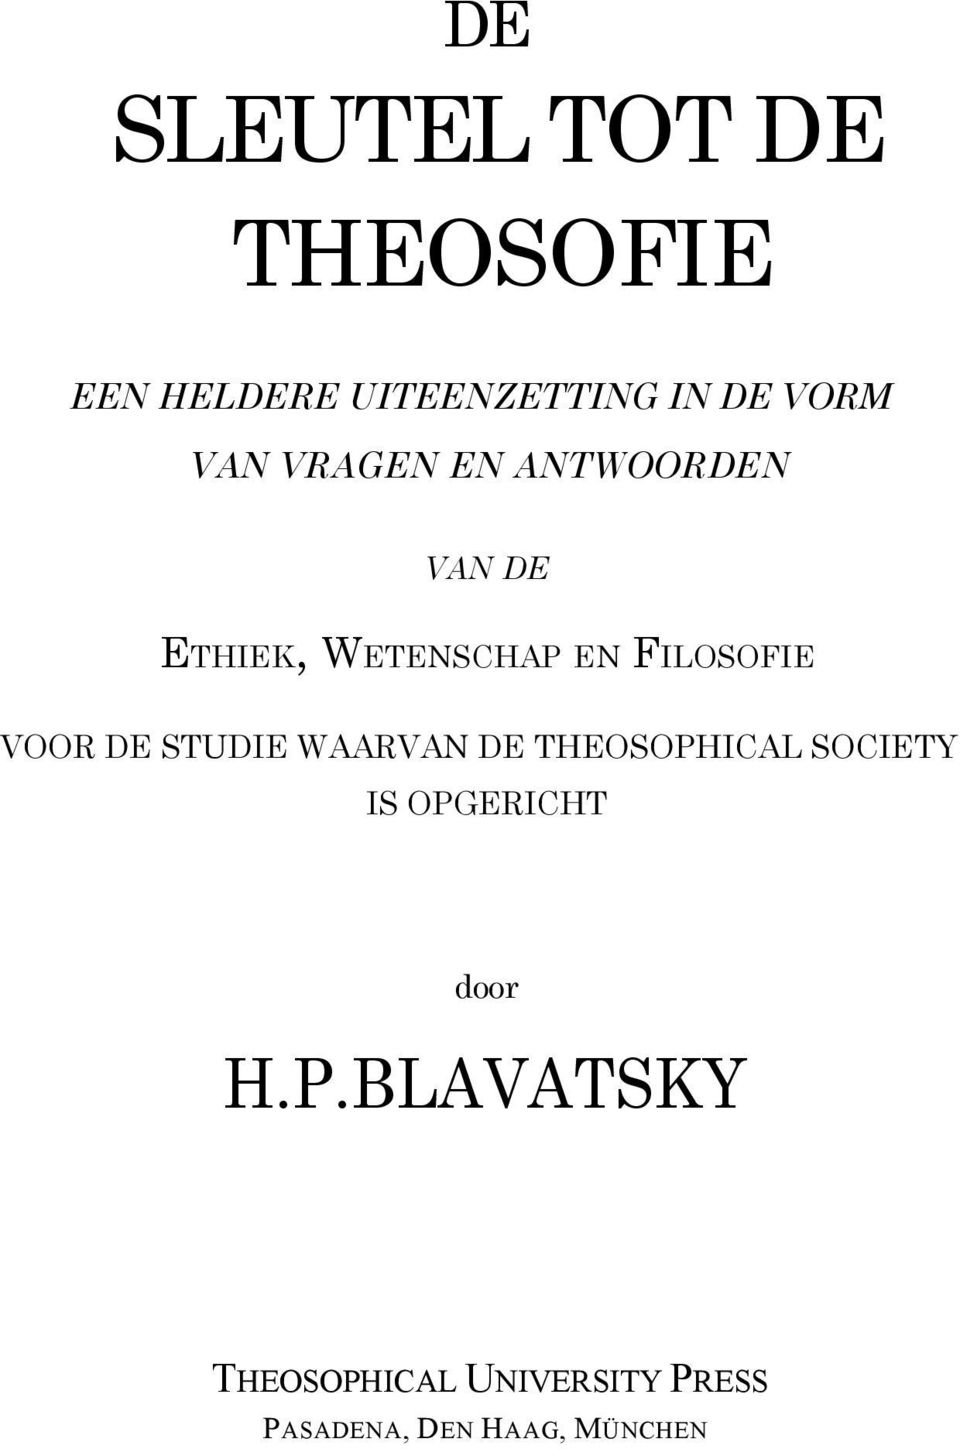 VOOR DE STUDIE WAARVAN DE THEOSOPHICAL SOCIETY IS OPGERICHT door H.